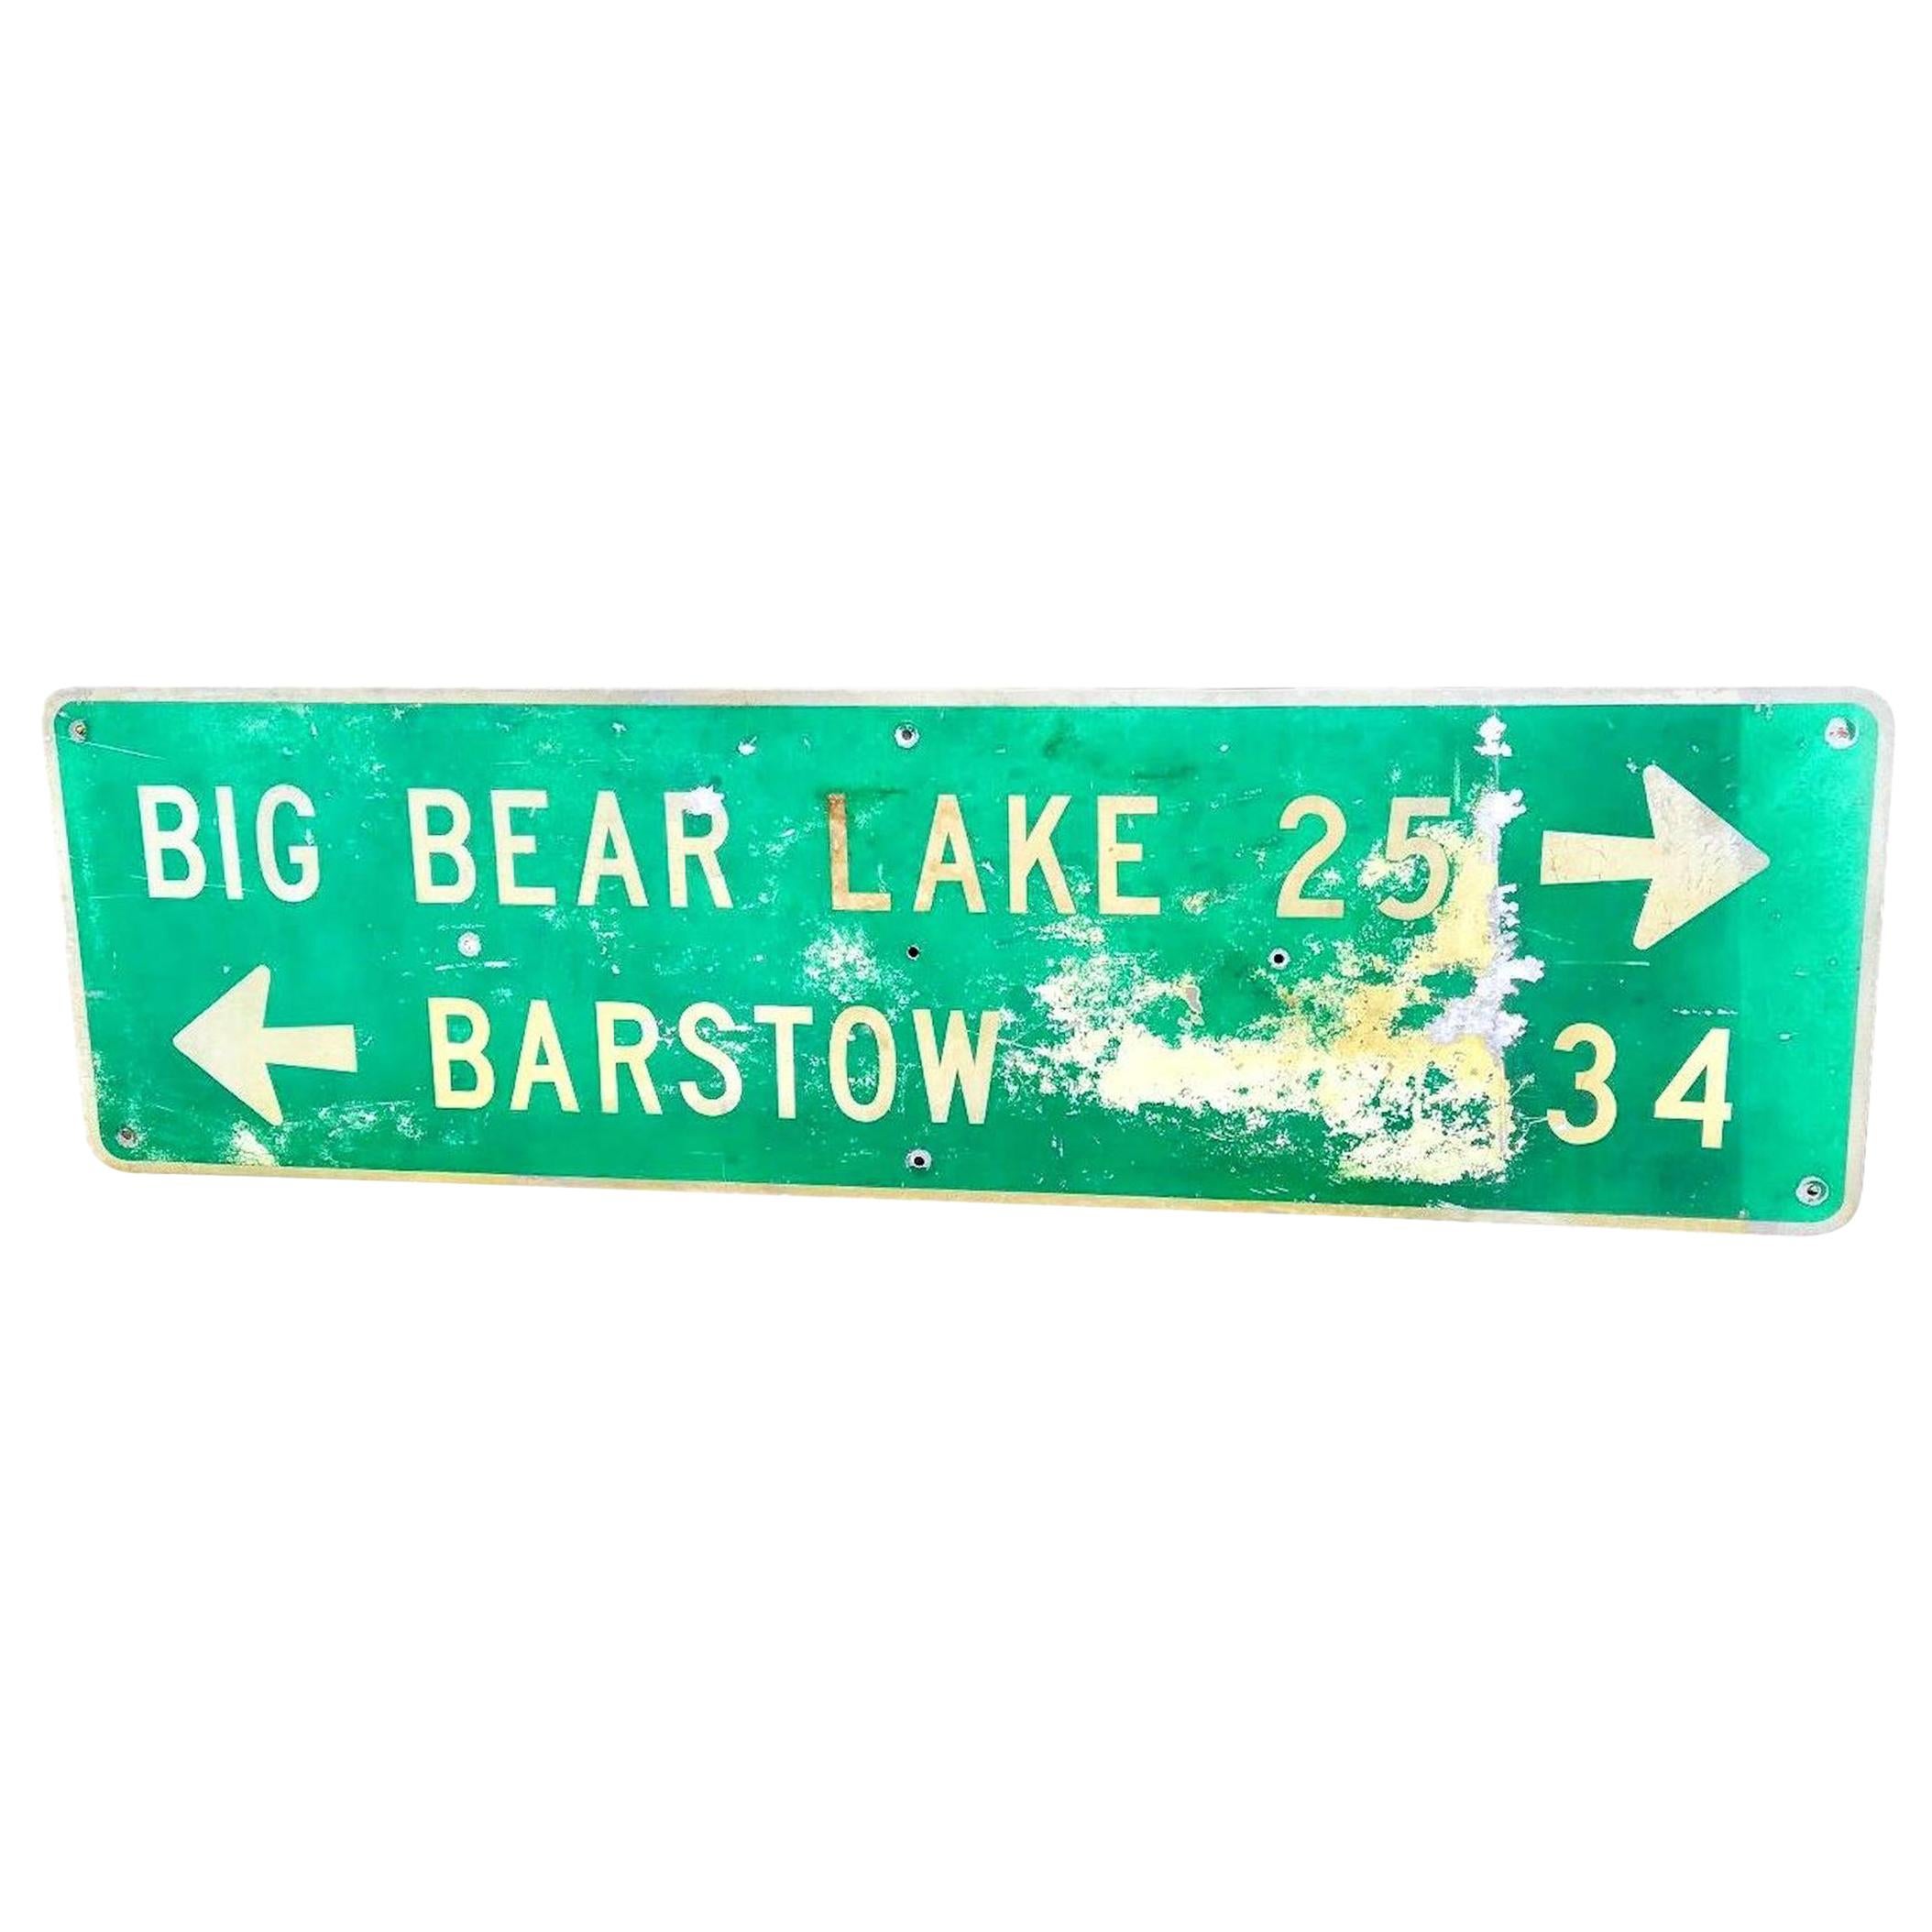 Grand panneau routier de l'autoroute de Californie représentant le grand lac Big Bear